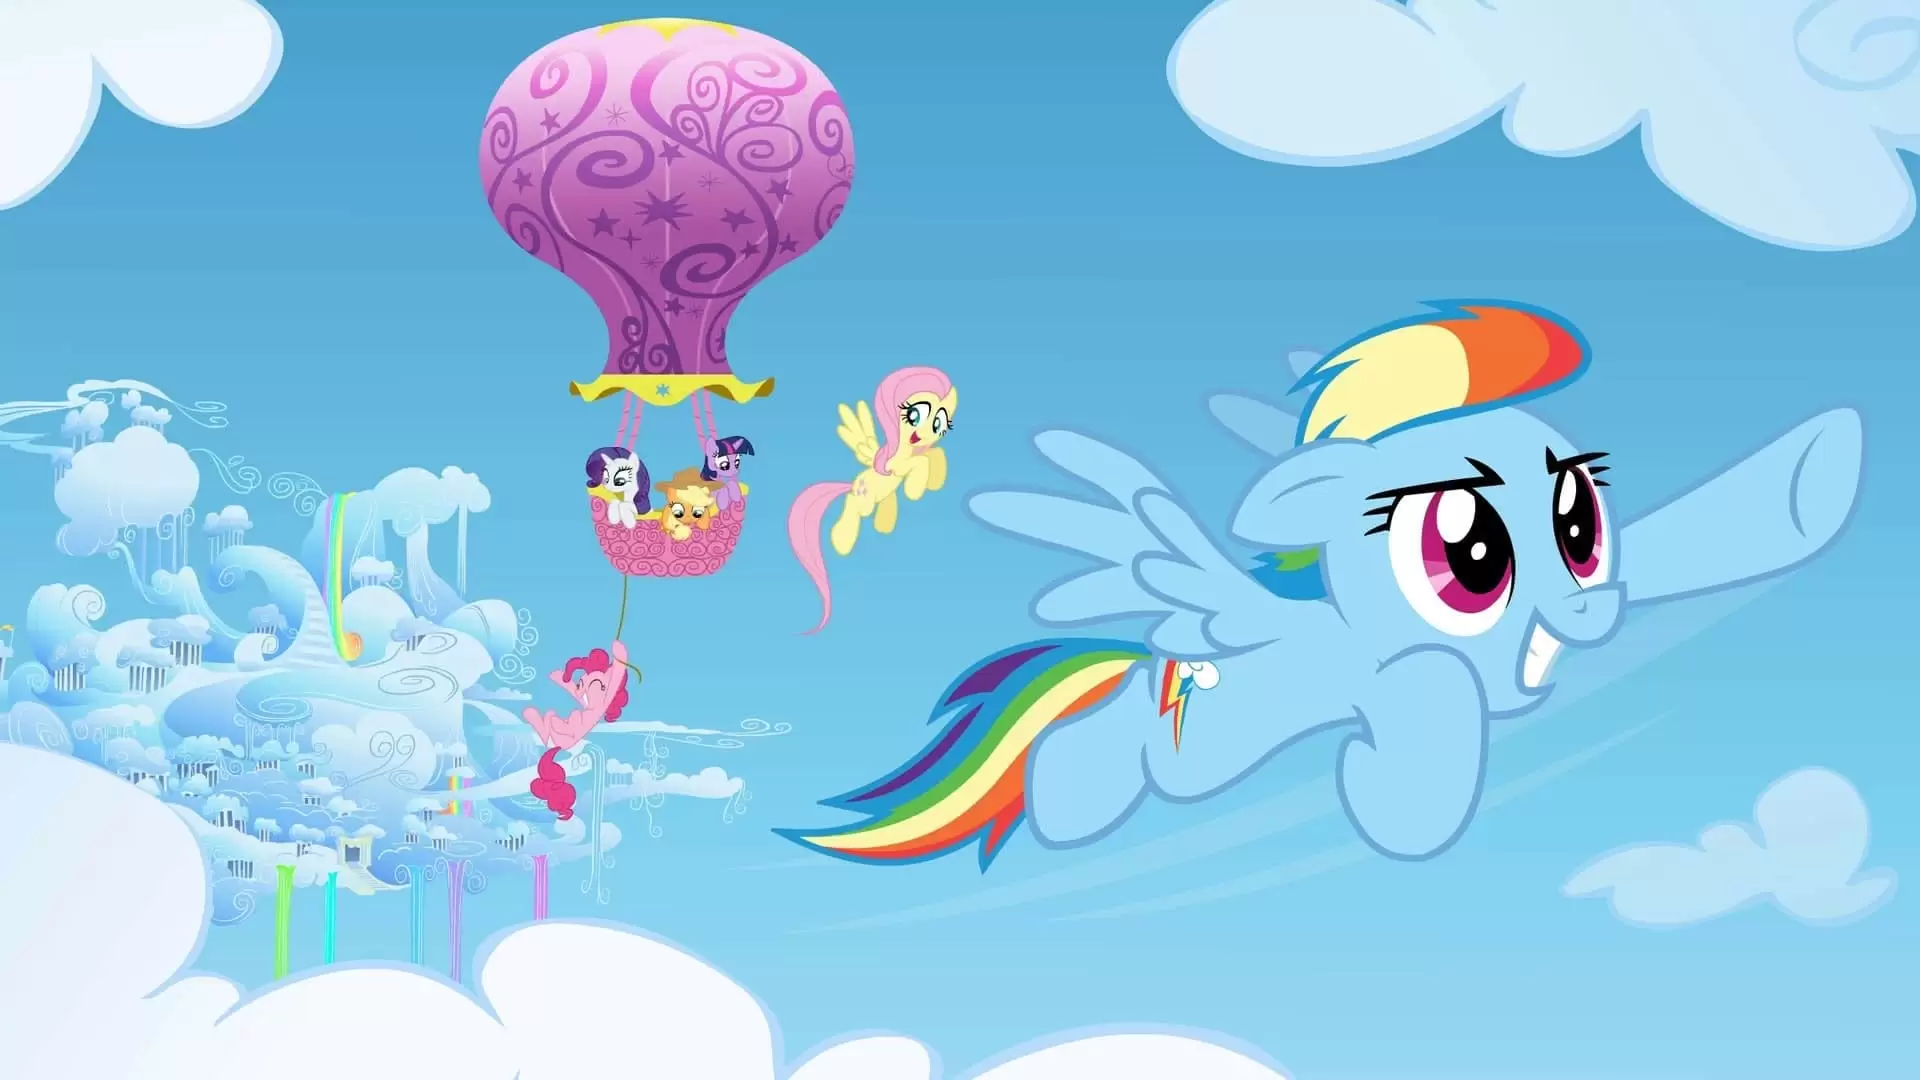 دانلود انیمیشن My Little Pony: Friendship Is Magic 2010 (پونی کوچولوی من: دوستی جادوست) با زیرنویس فارسی